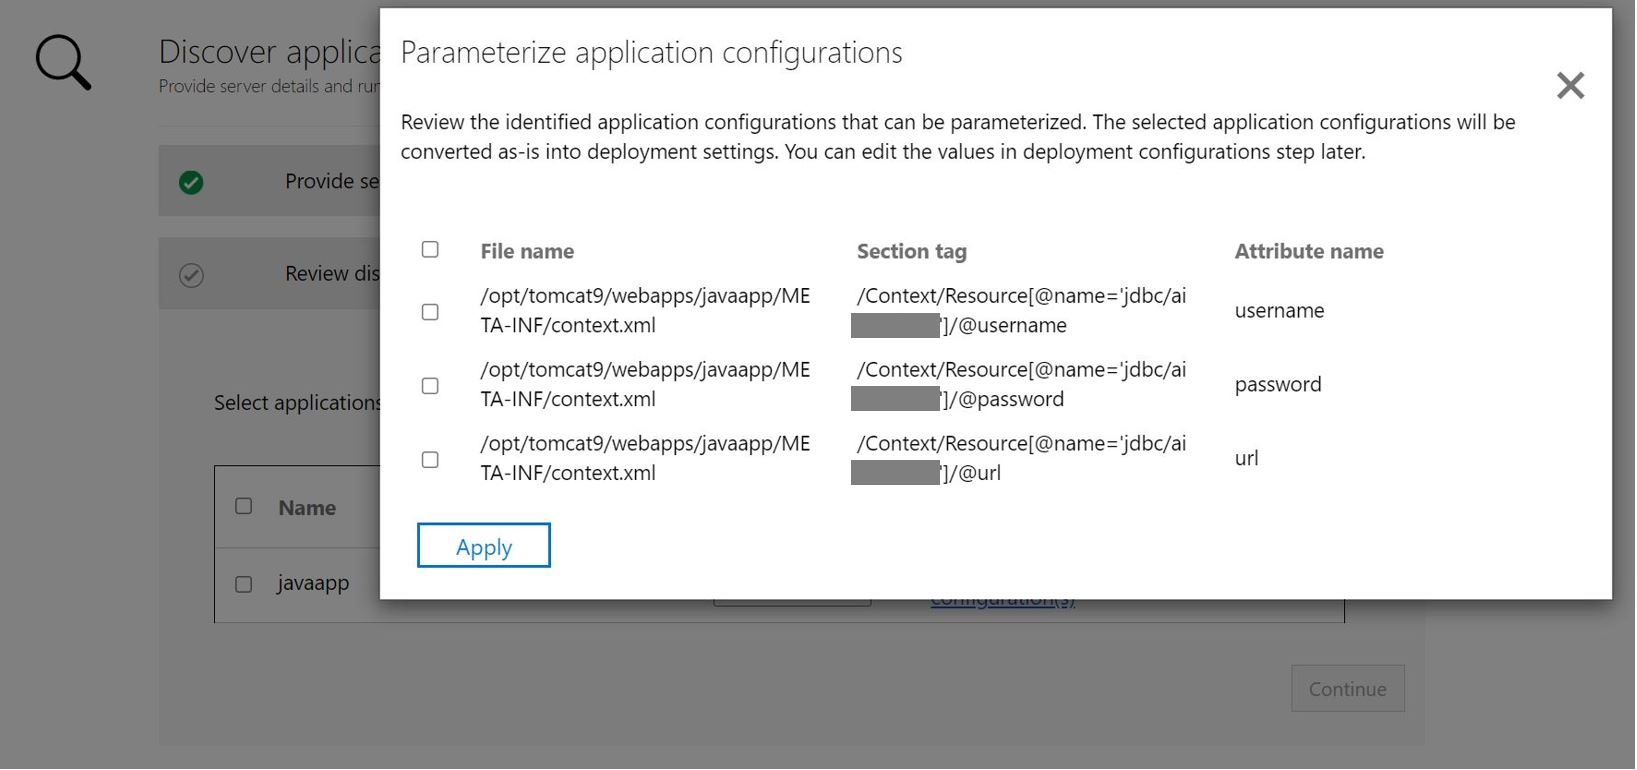 Schermopname van app-configuratieparameterisatie ASP.NET toepassing.